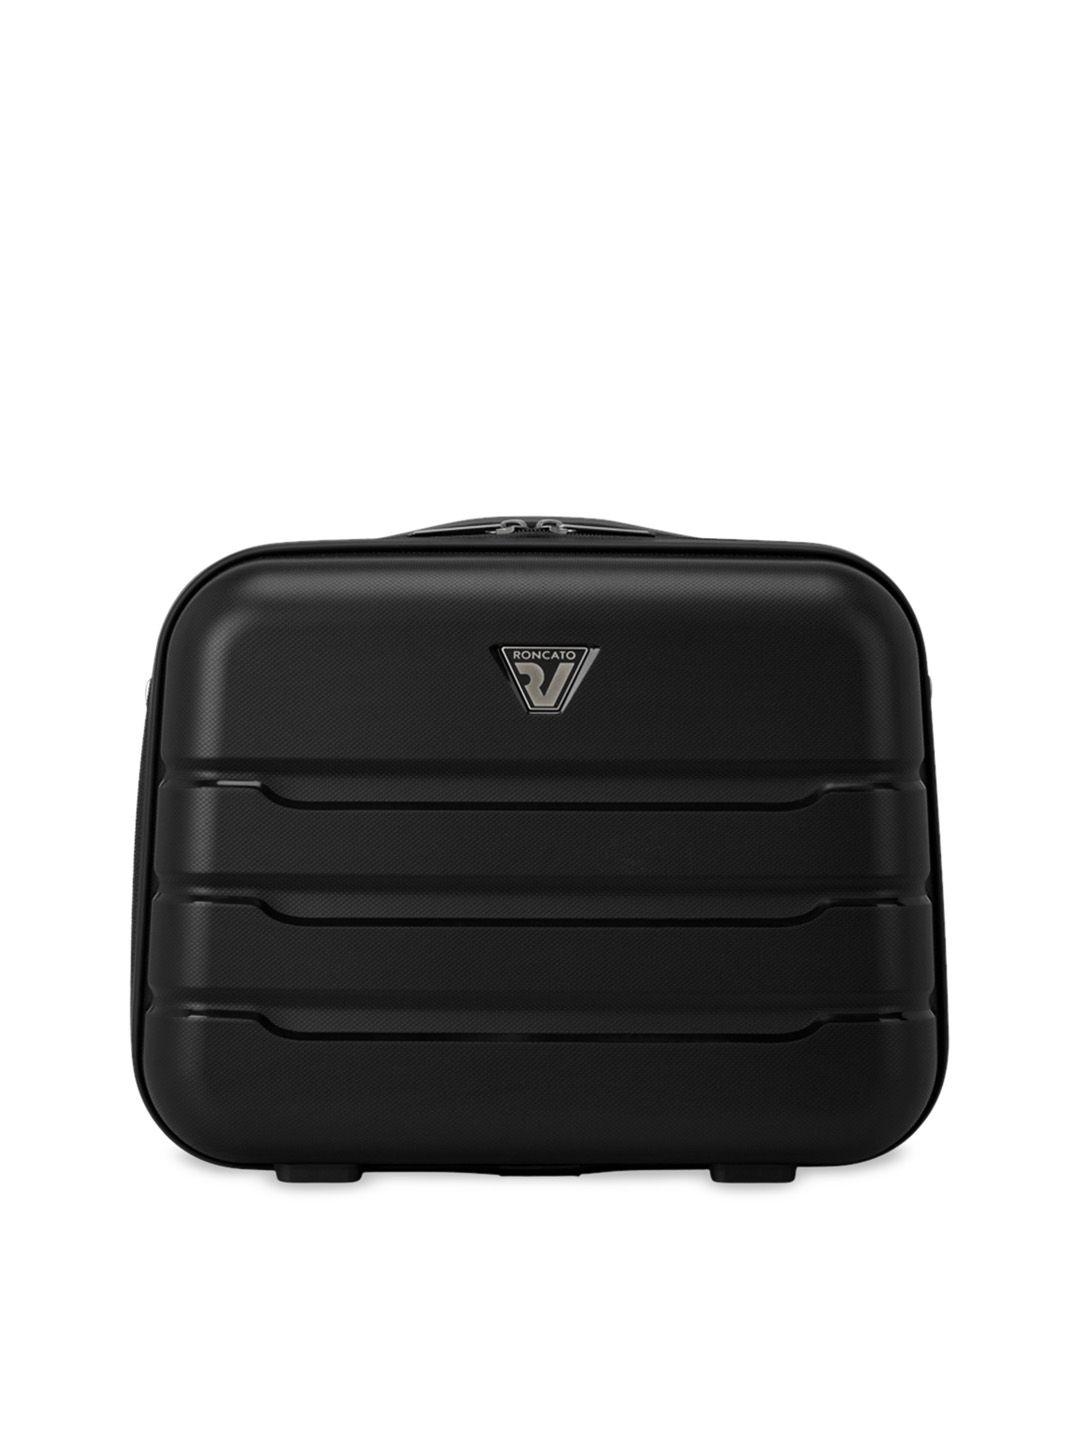 roncato butterfly nero black polypropylene medium hard case luggage